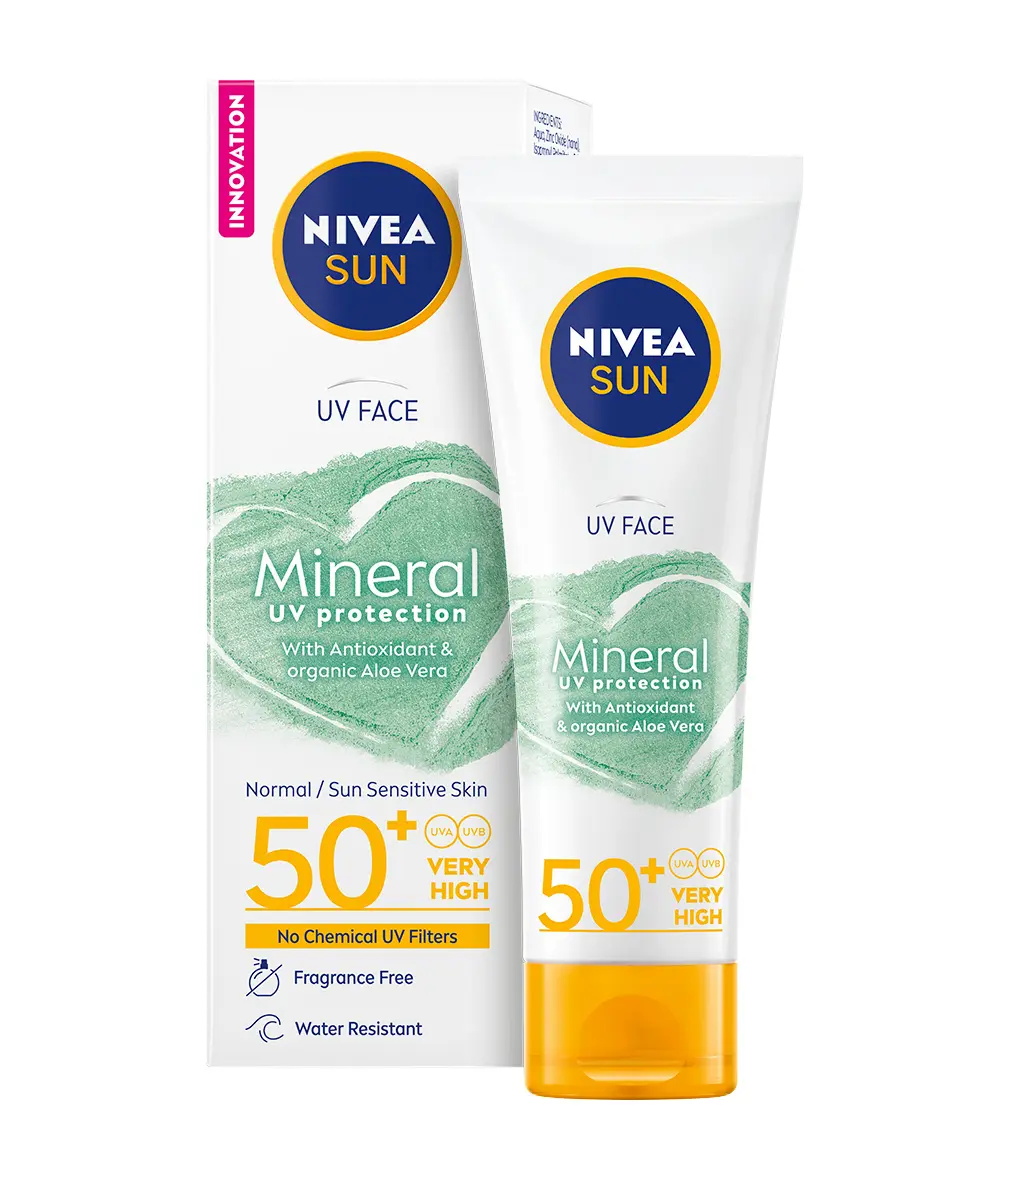 Crema de fata Nivea Sun cu filtre UV minerale, SPF50+, 50ml